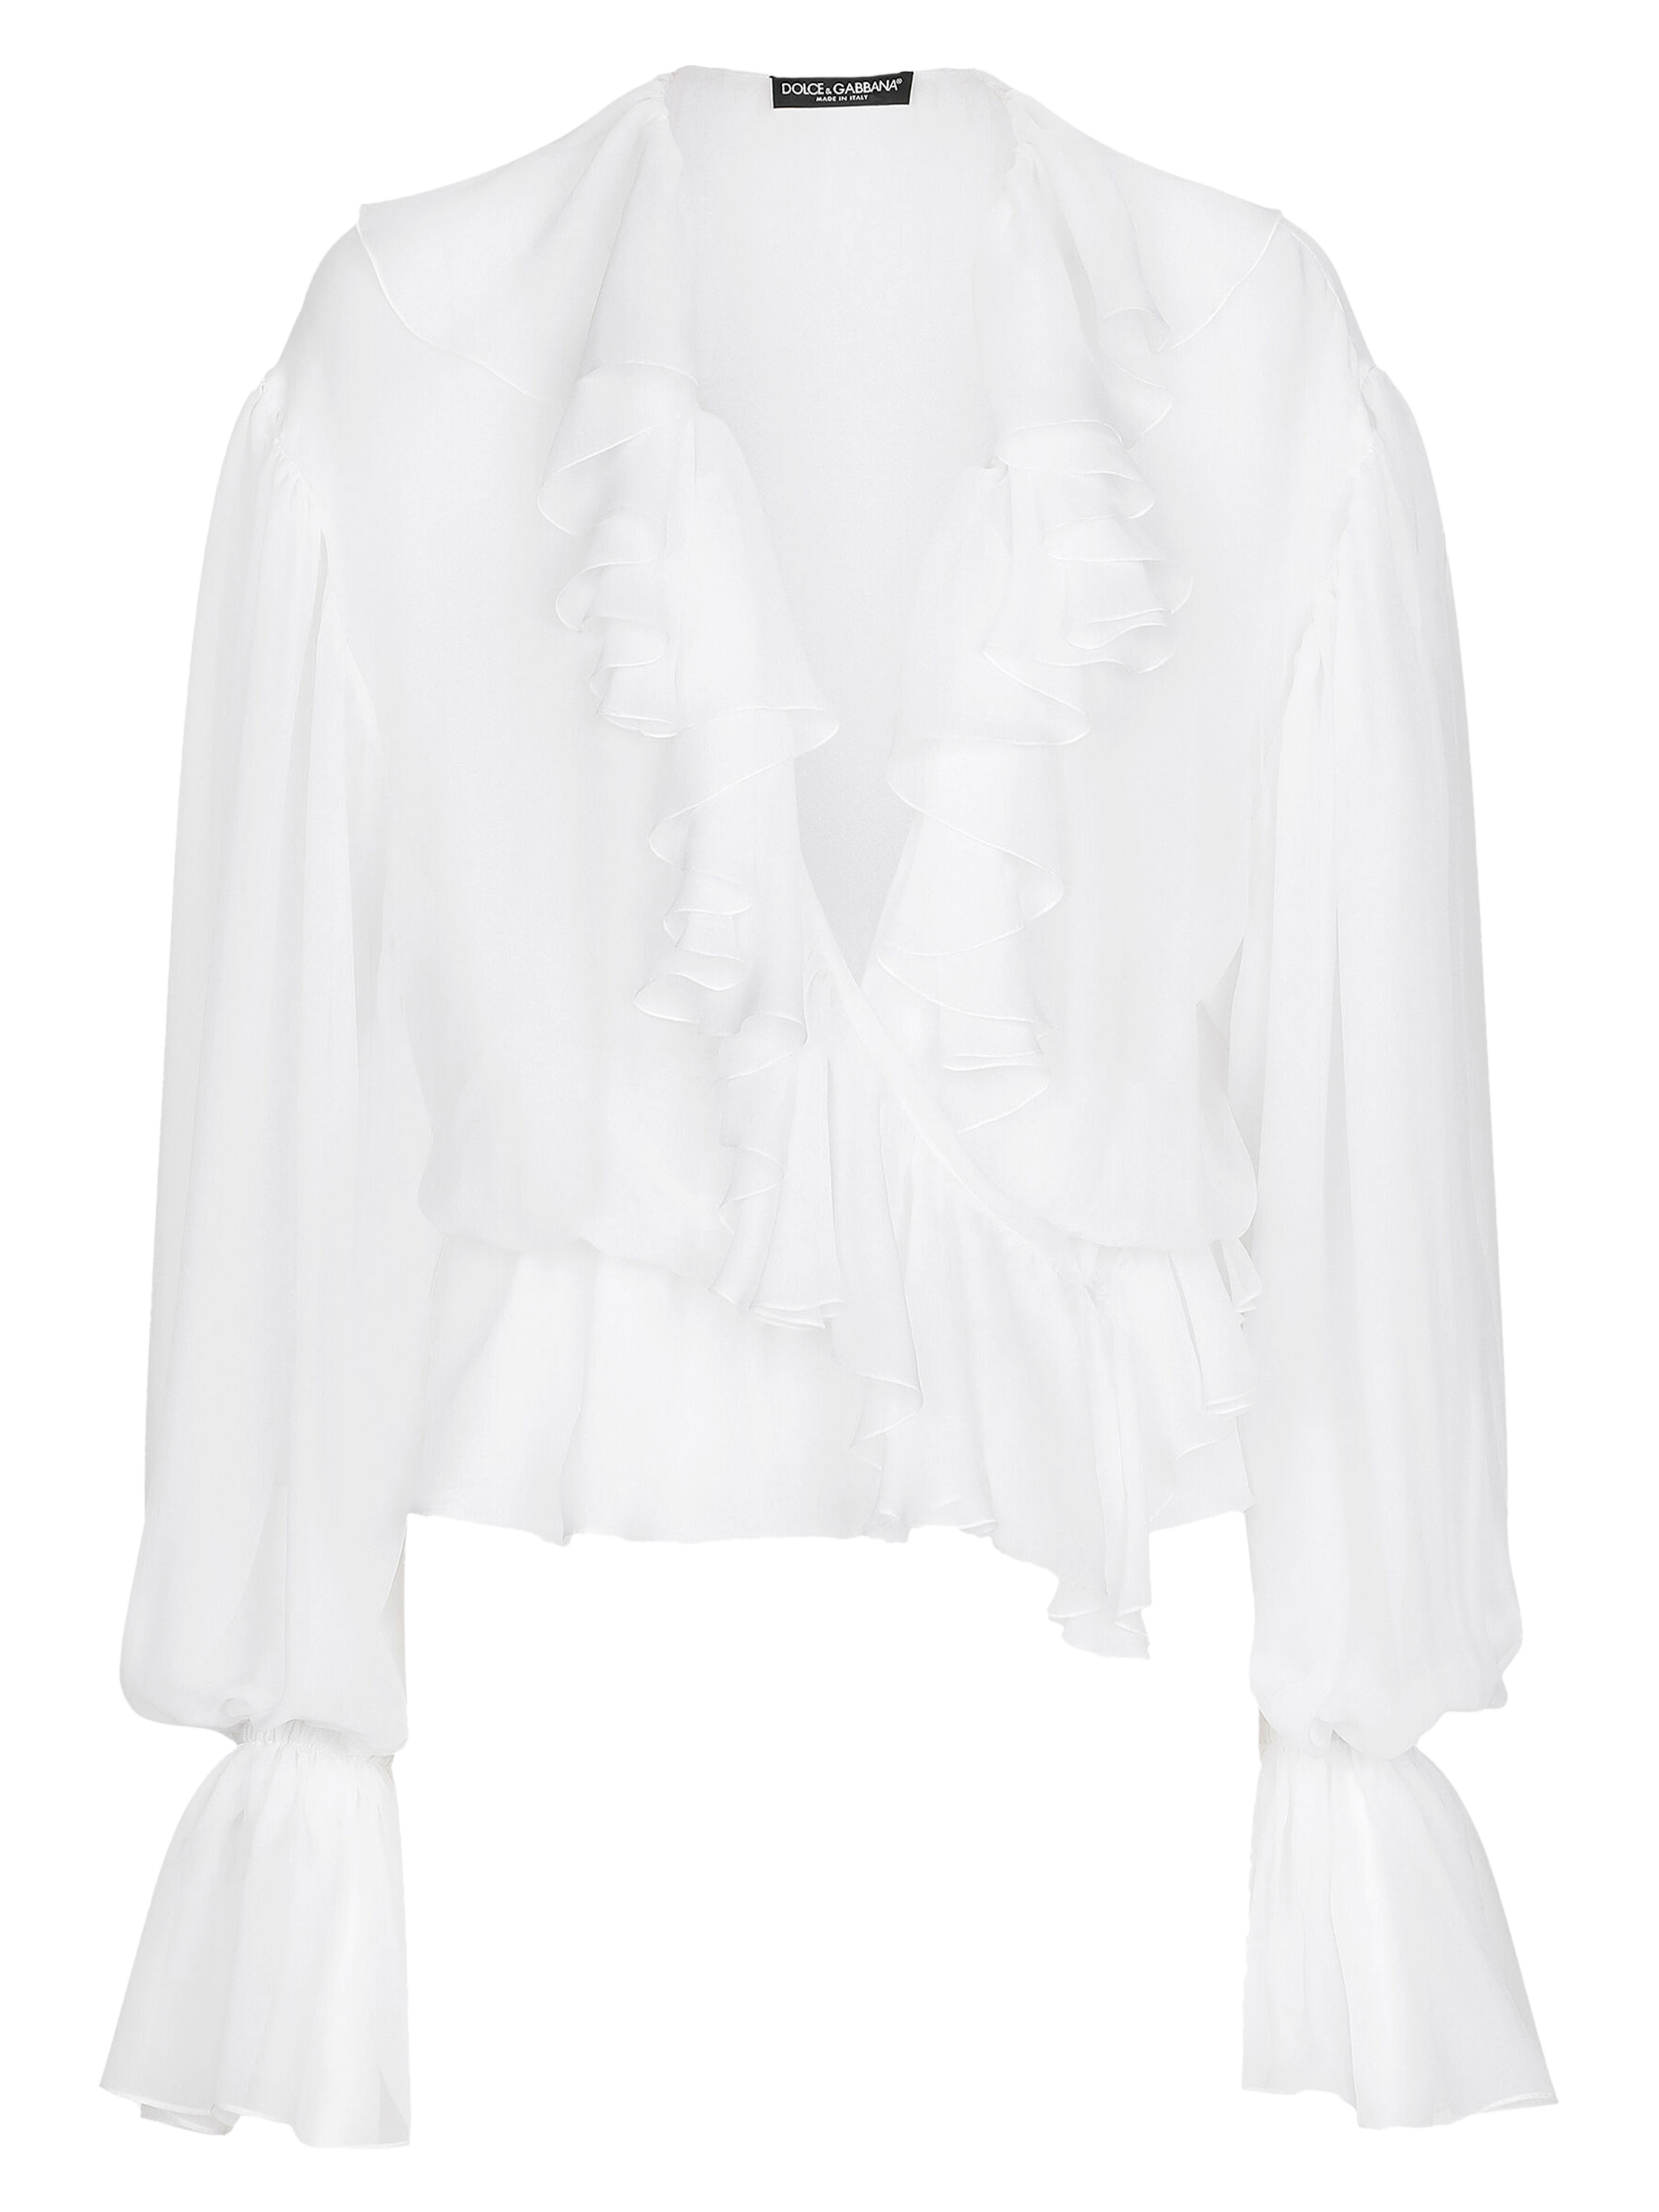 Блуза Dolce&Gabbana Chiffon, белый блузка с рюшами из шифона и кружева молочного цвета gulliver